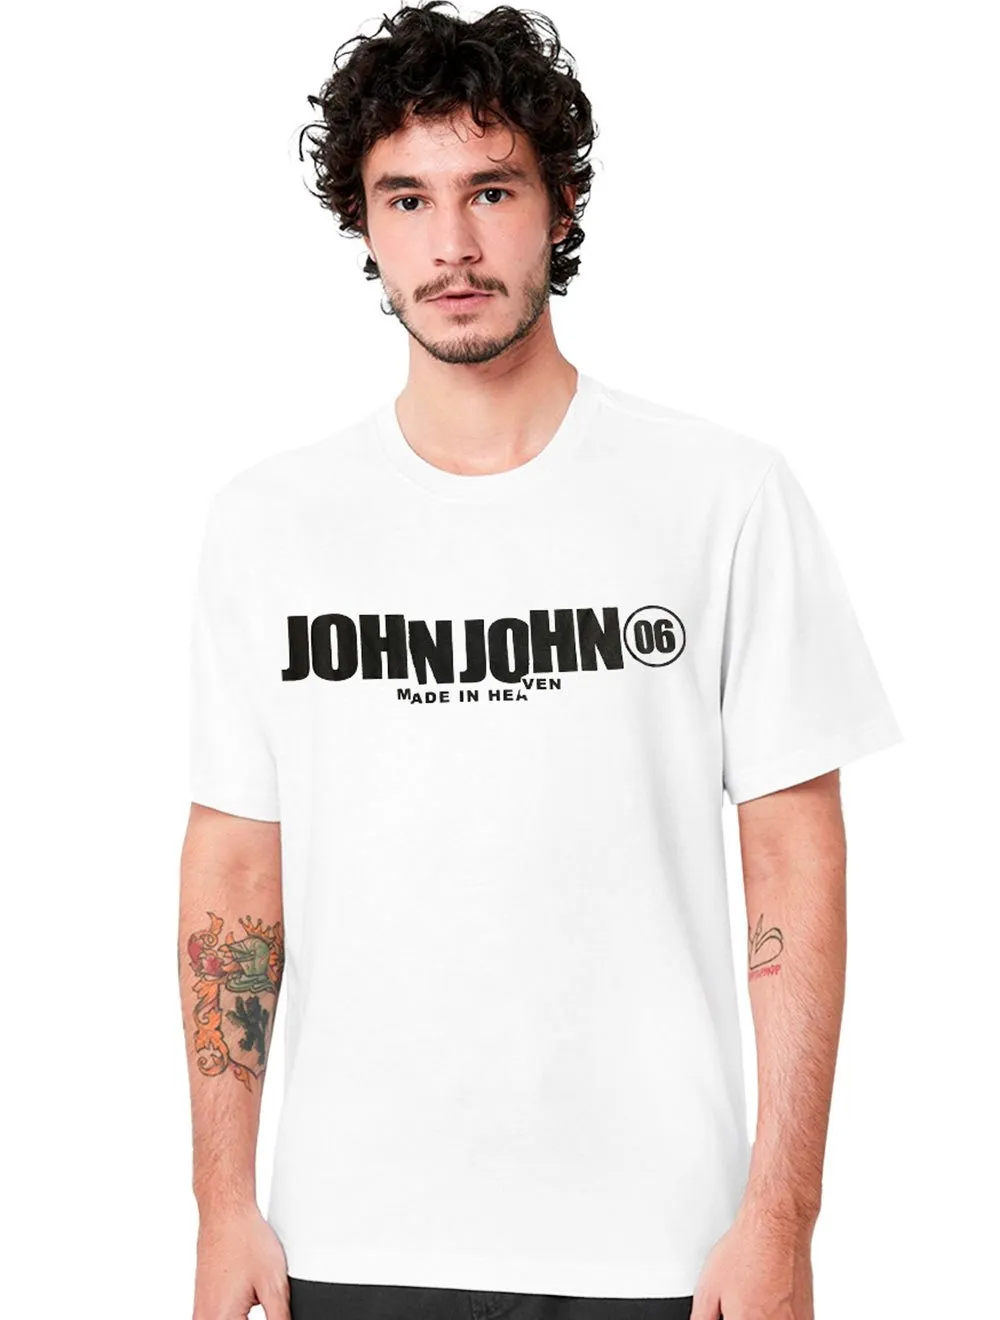 Camiseta John John Masculina Relaxed Crroked Branca